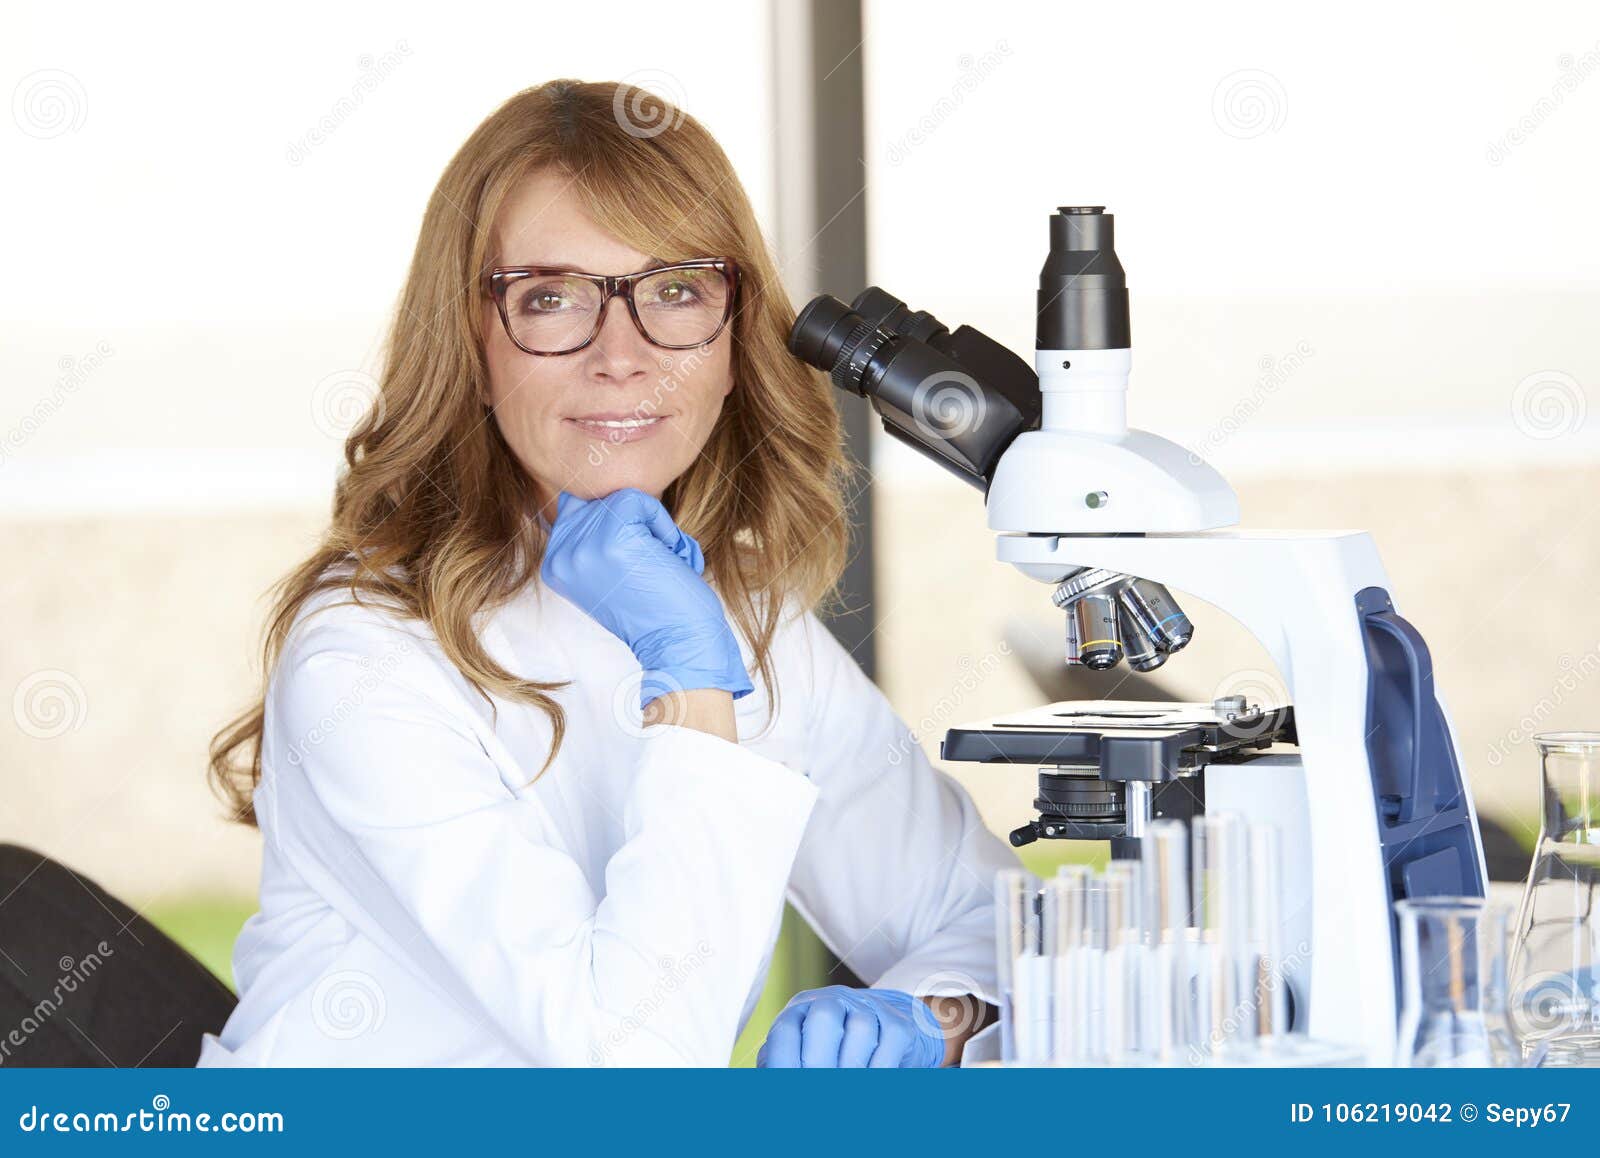 Ученый ассистент. Ассистент ученого. Микробиолог. Девушка ученый. Женщина ученый микробиолог.